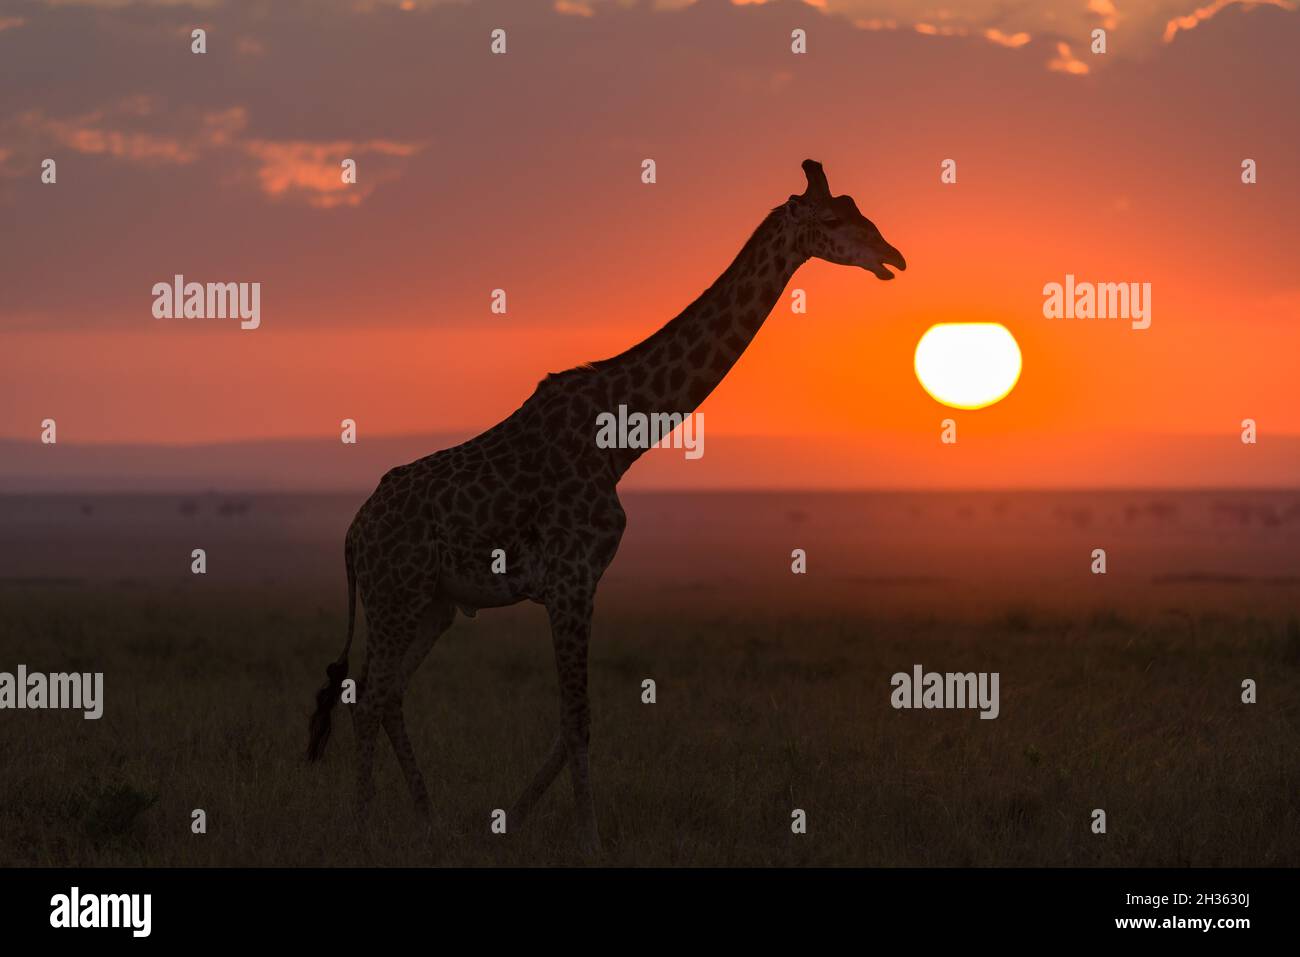 Masai Giraffe (Giraffa camelopardalis tippelskirchi) partially silhouetted by sun at sunrise, Maasai Mara, Kenya Stock Photo